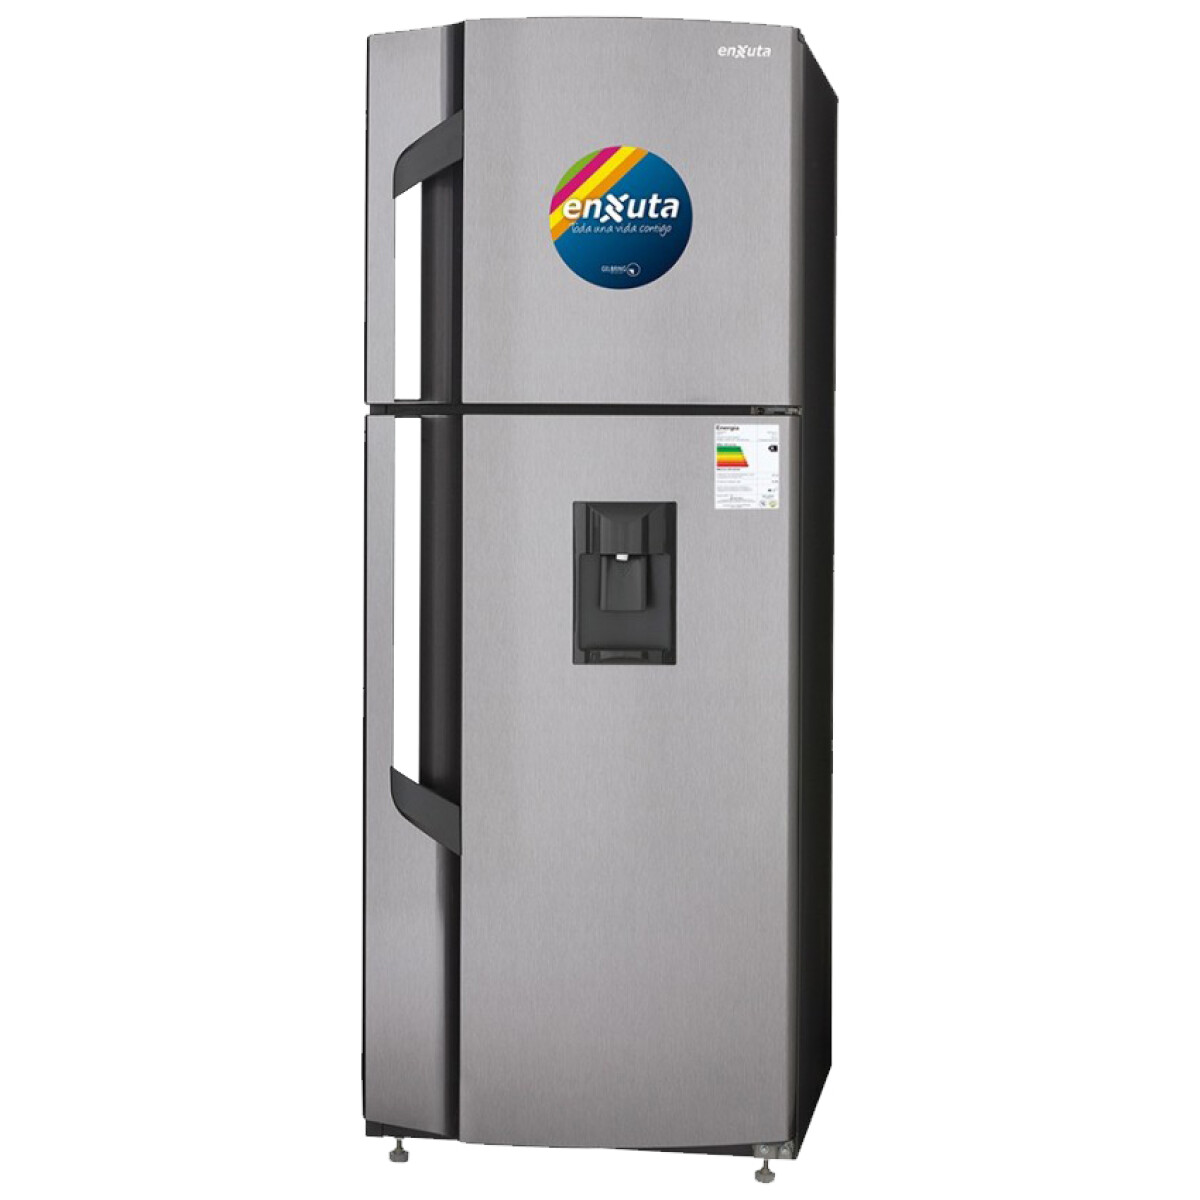 Refrigerador Enxuta Renx2260im / Renx2260id 